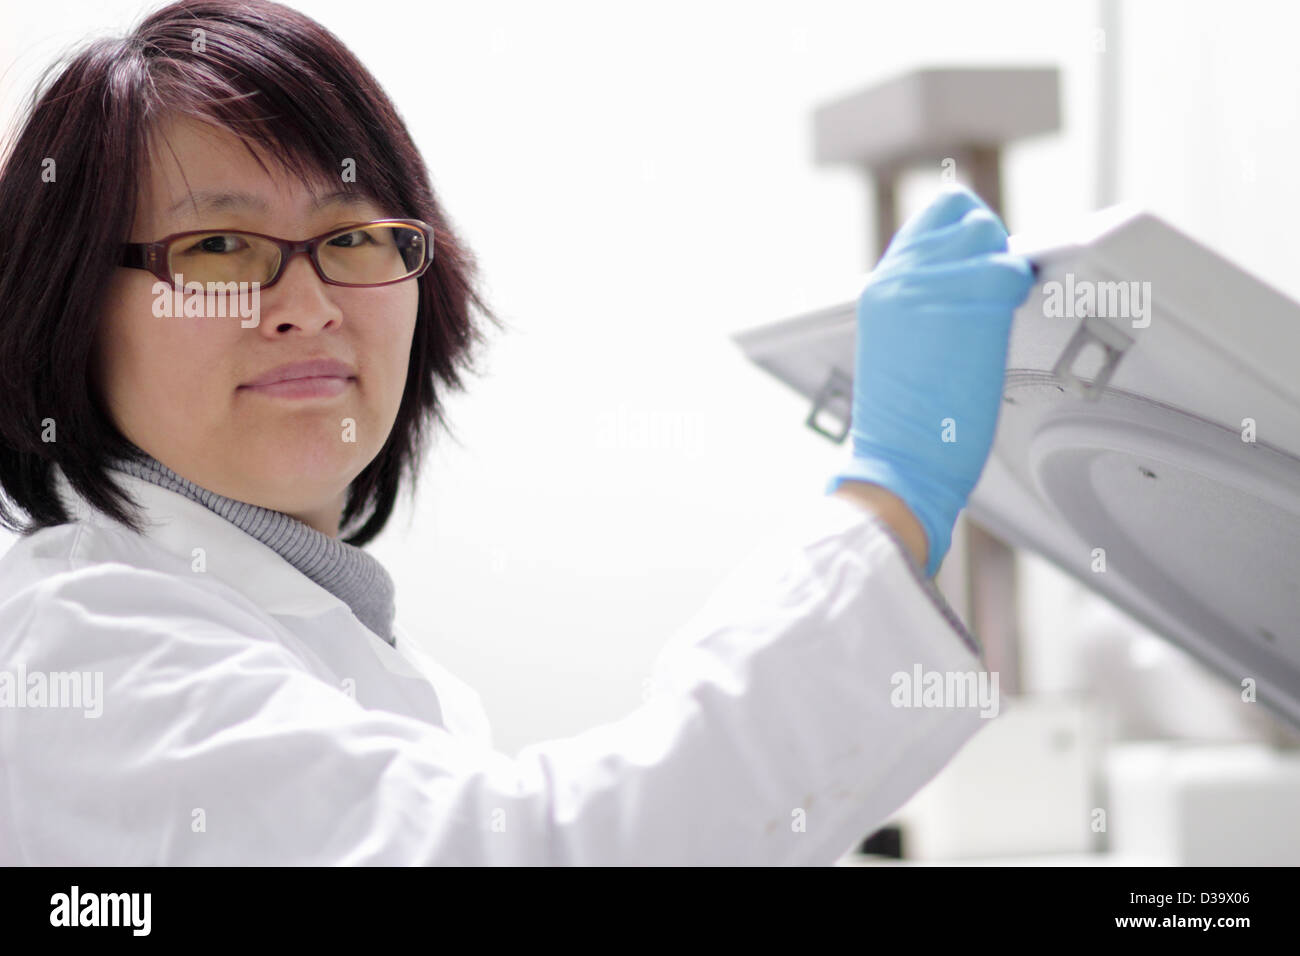 Scientist using equipment in lab Stock Photo